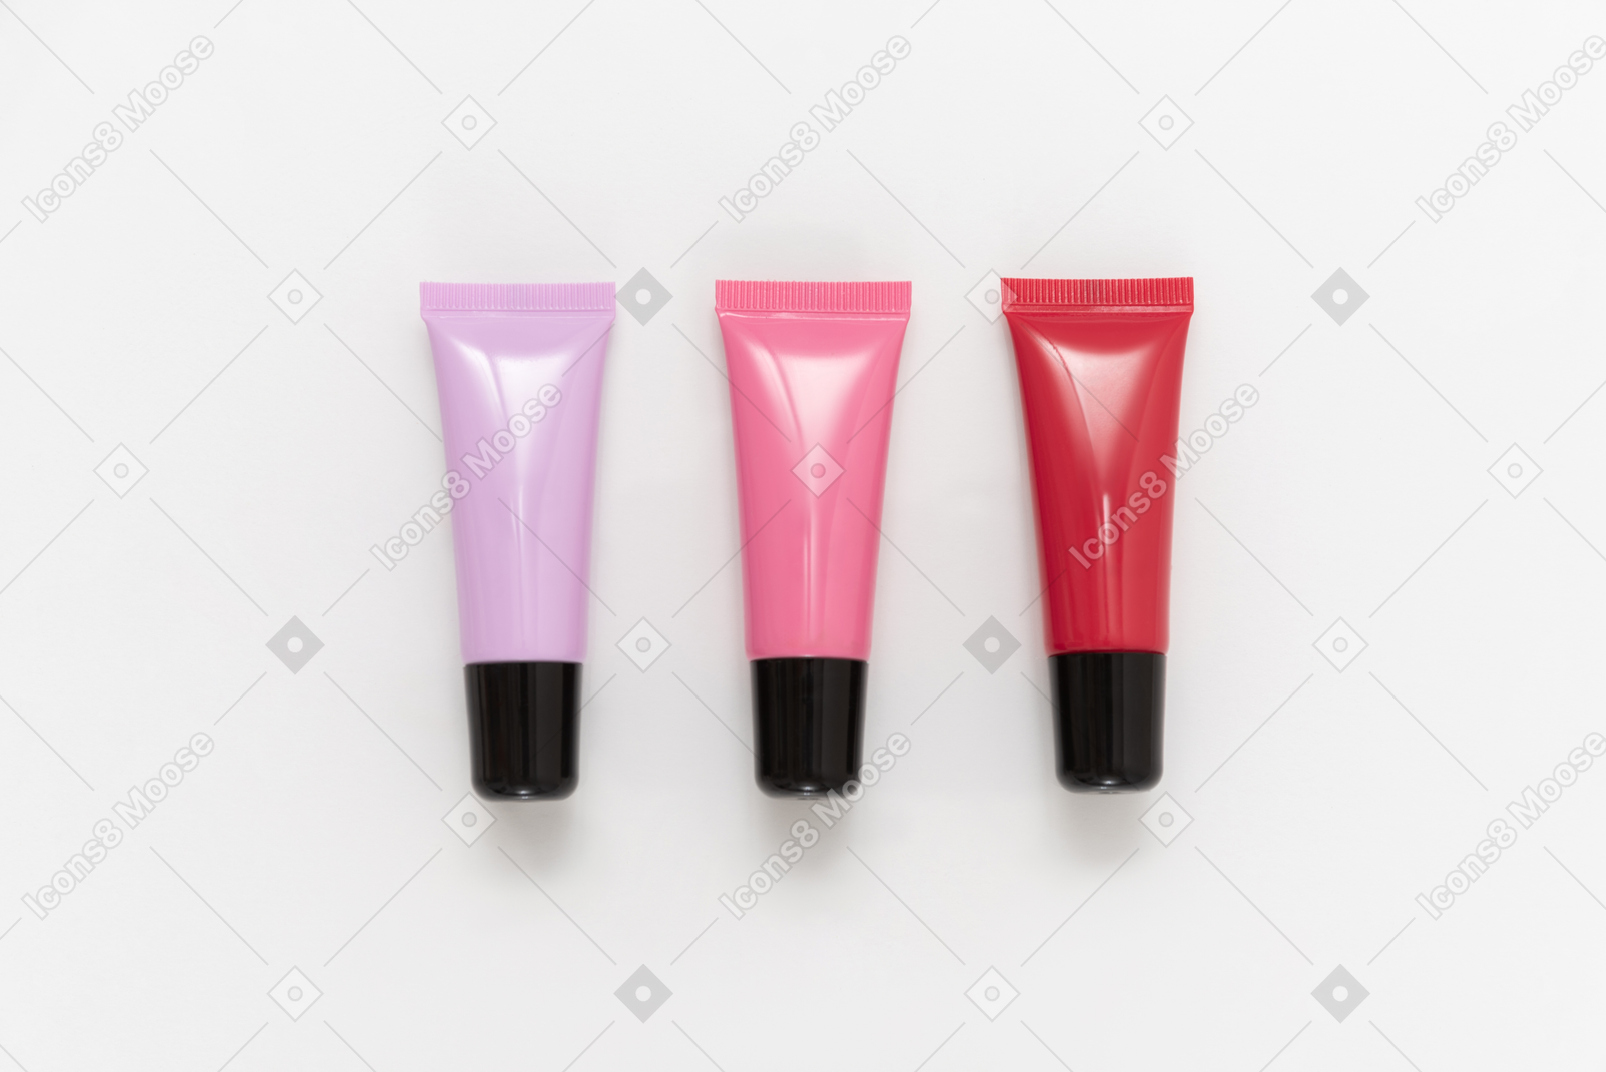 빨간색, 보라색 및 분홍색 립스틱 용기